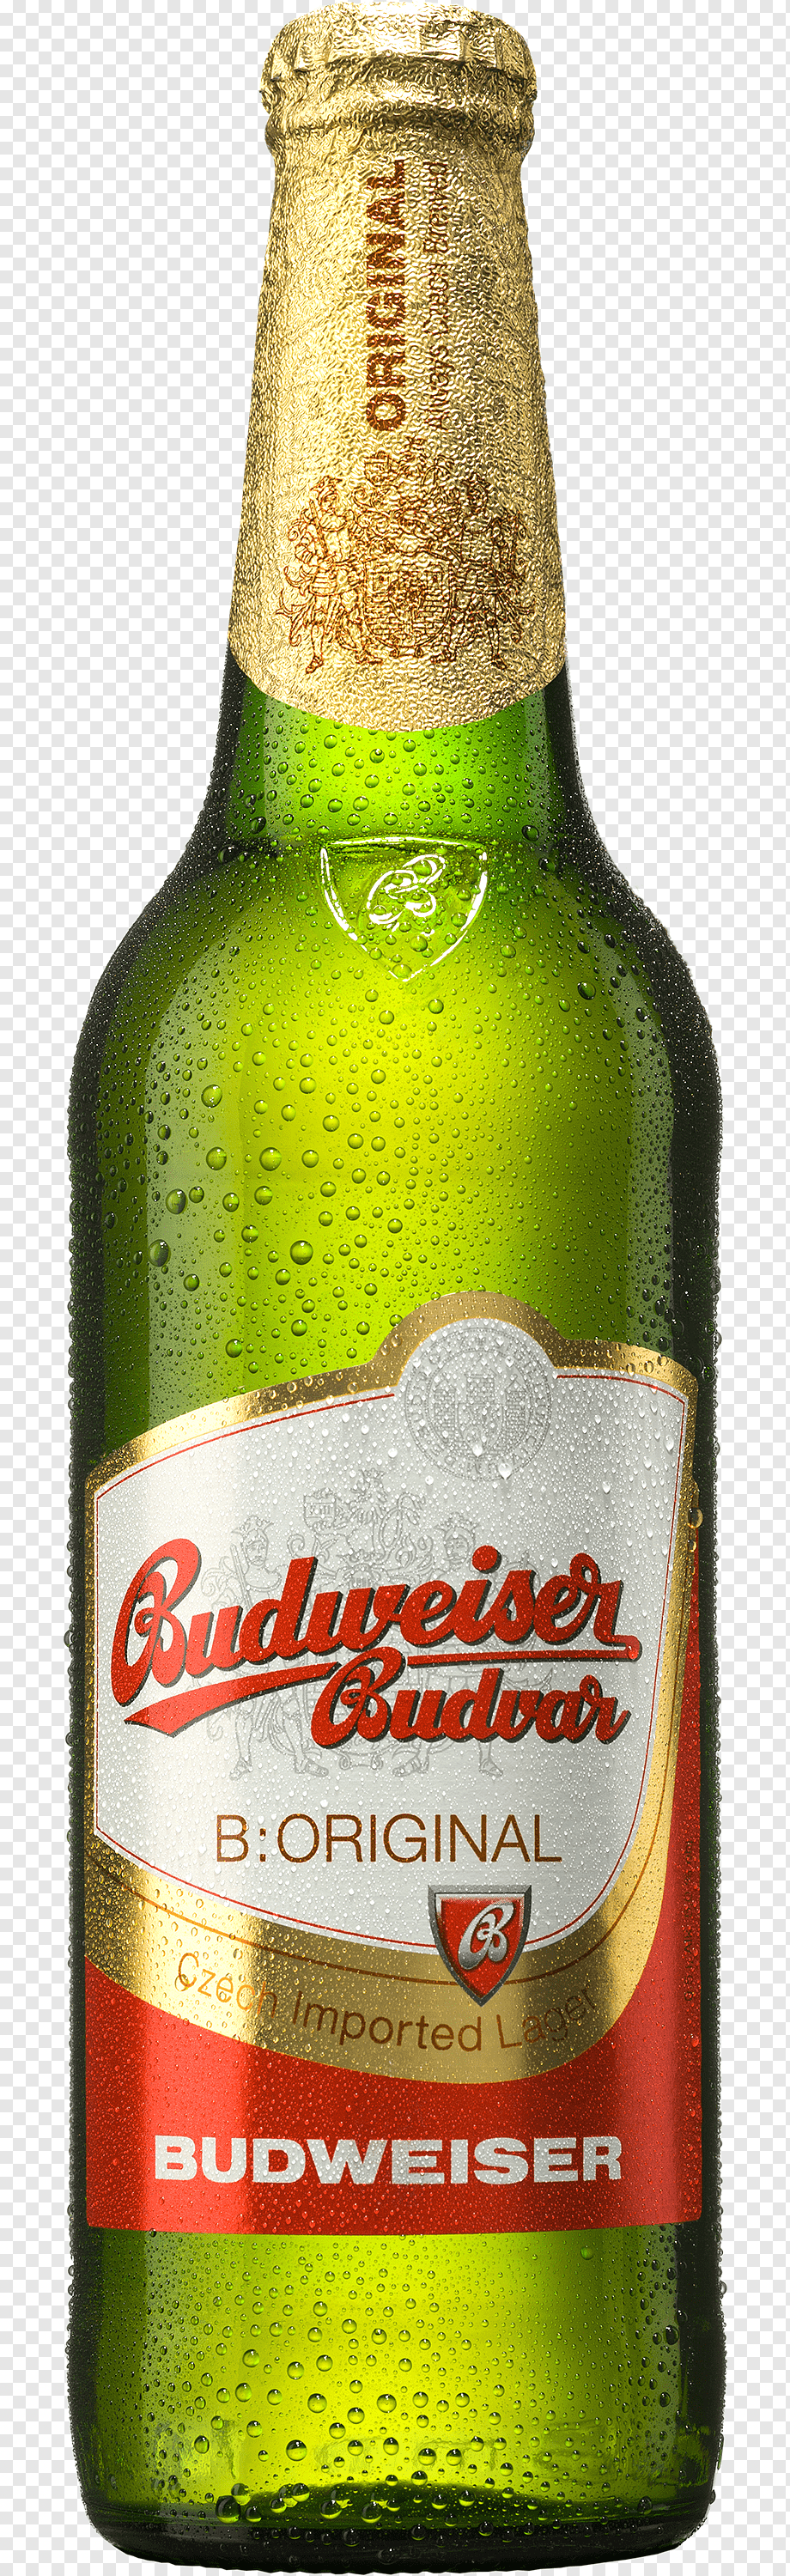 Пиво бад (bud): производитель, виды, крепость – как правильно пить